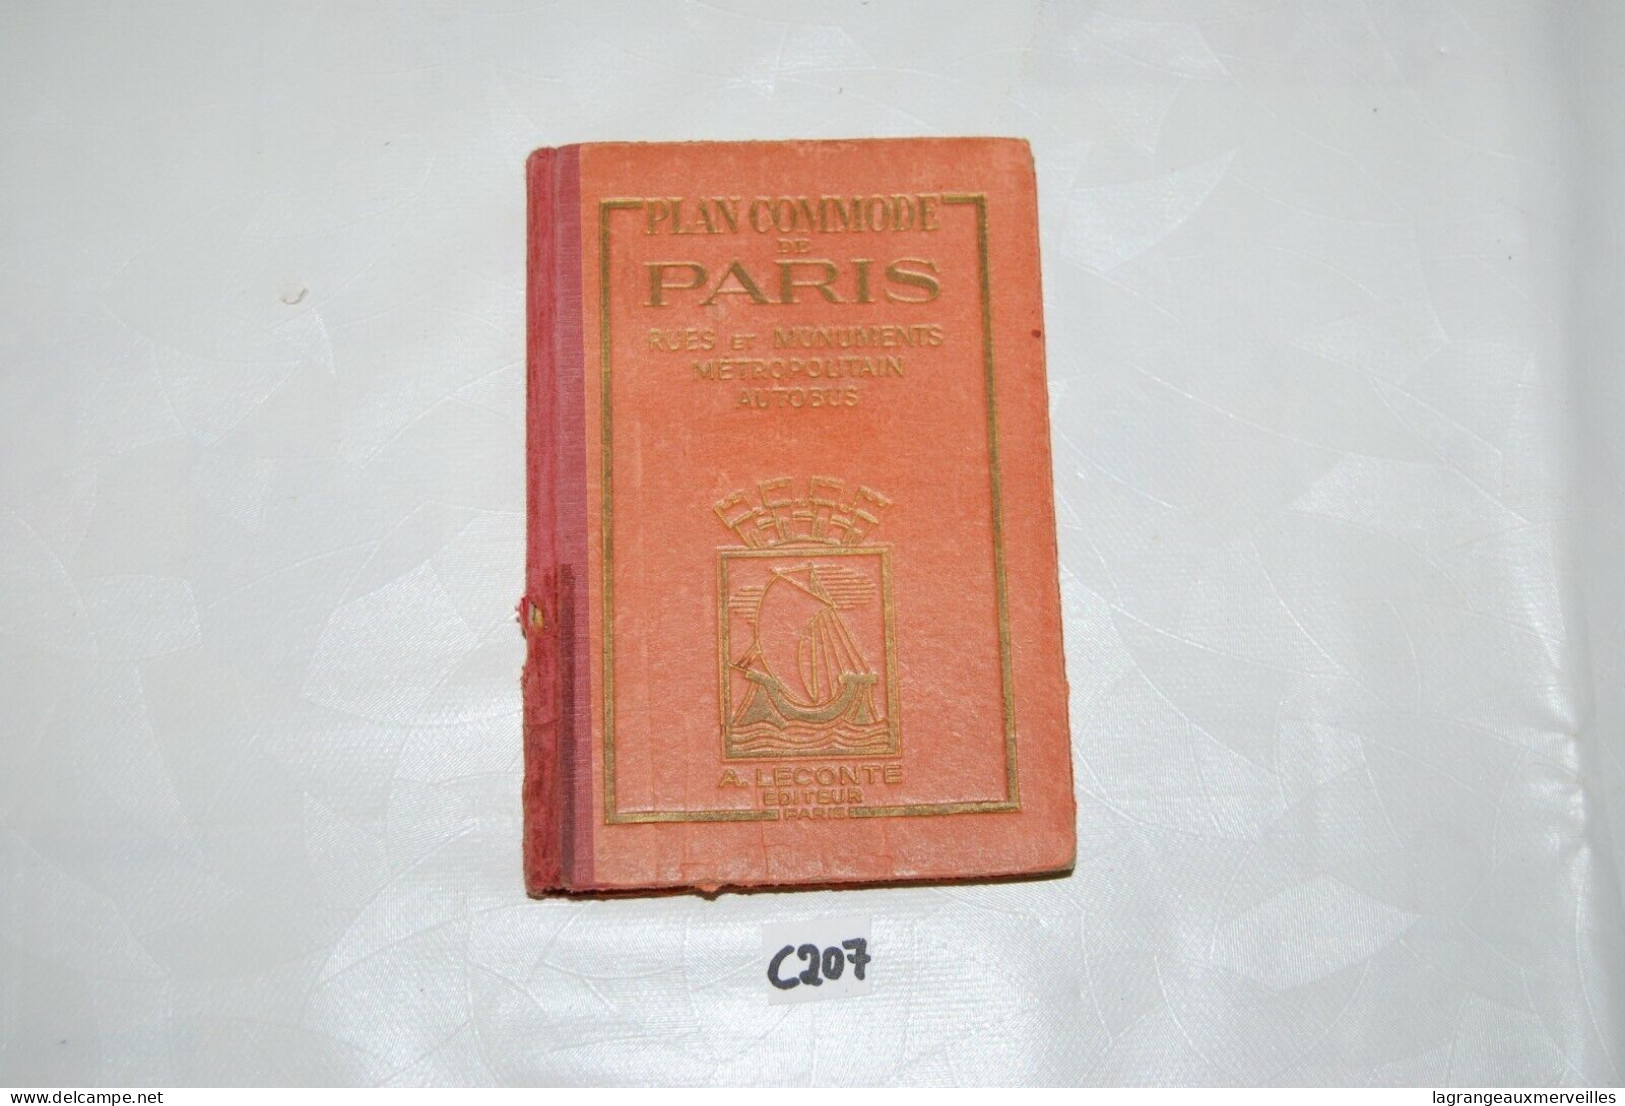 C207 Ancien Livret - Plan Commode De Paris - Rare Book Plan Des Rues Trams - Europe